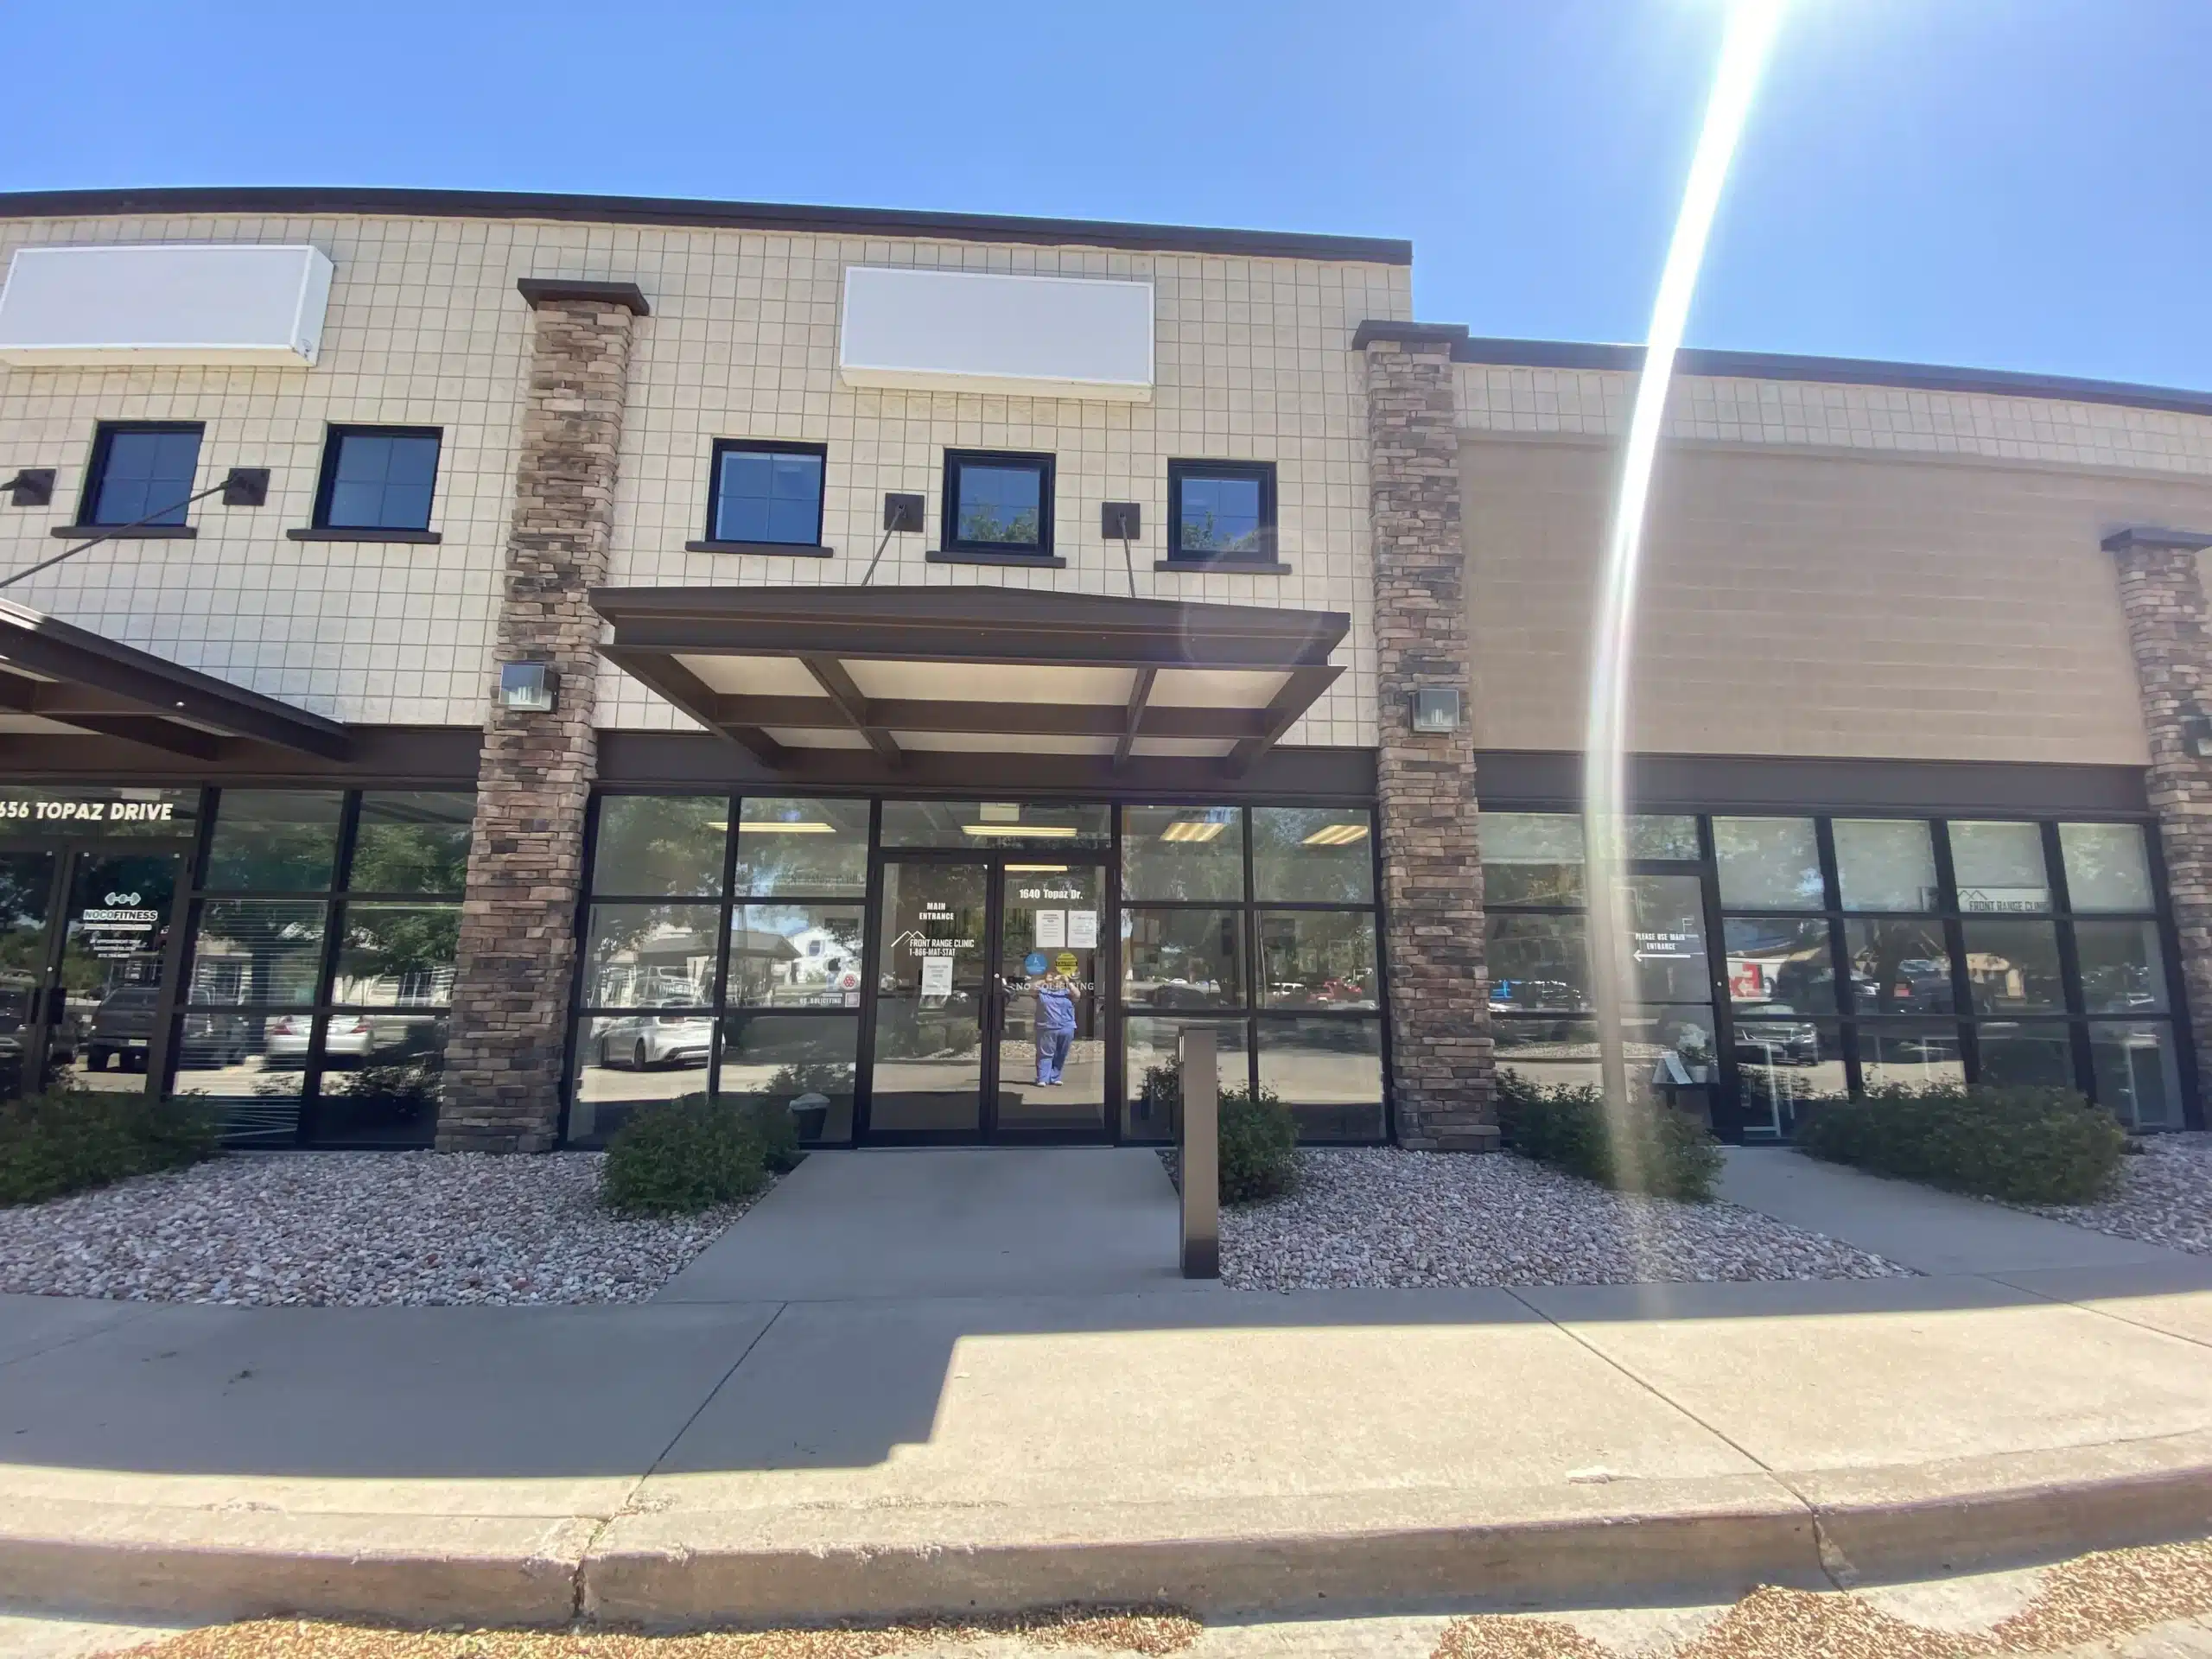 Exterior Suboxone clinic in loveland Colorado